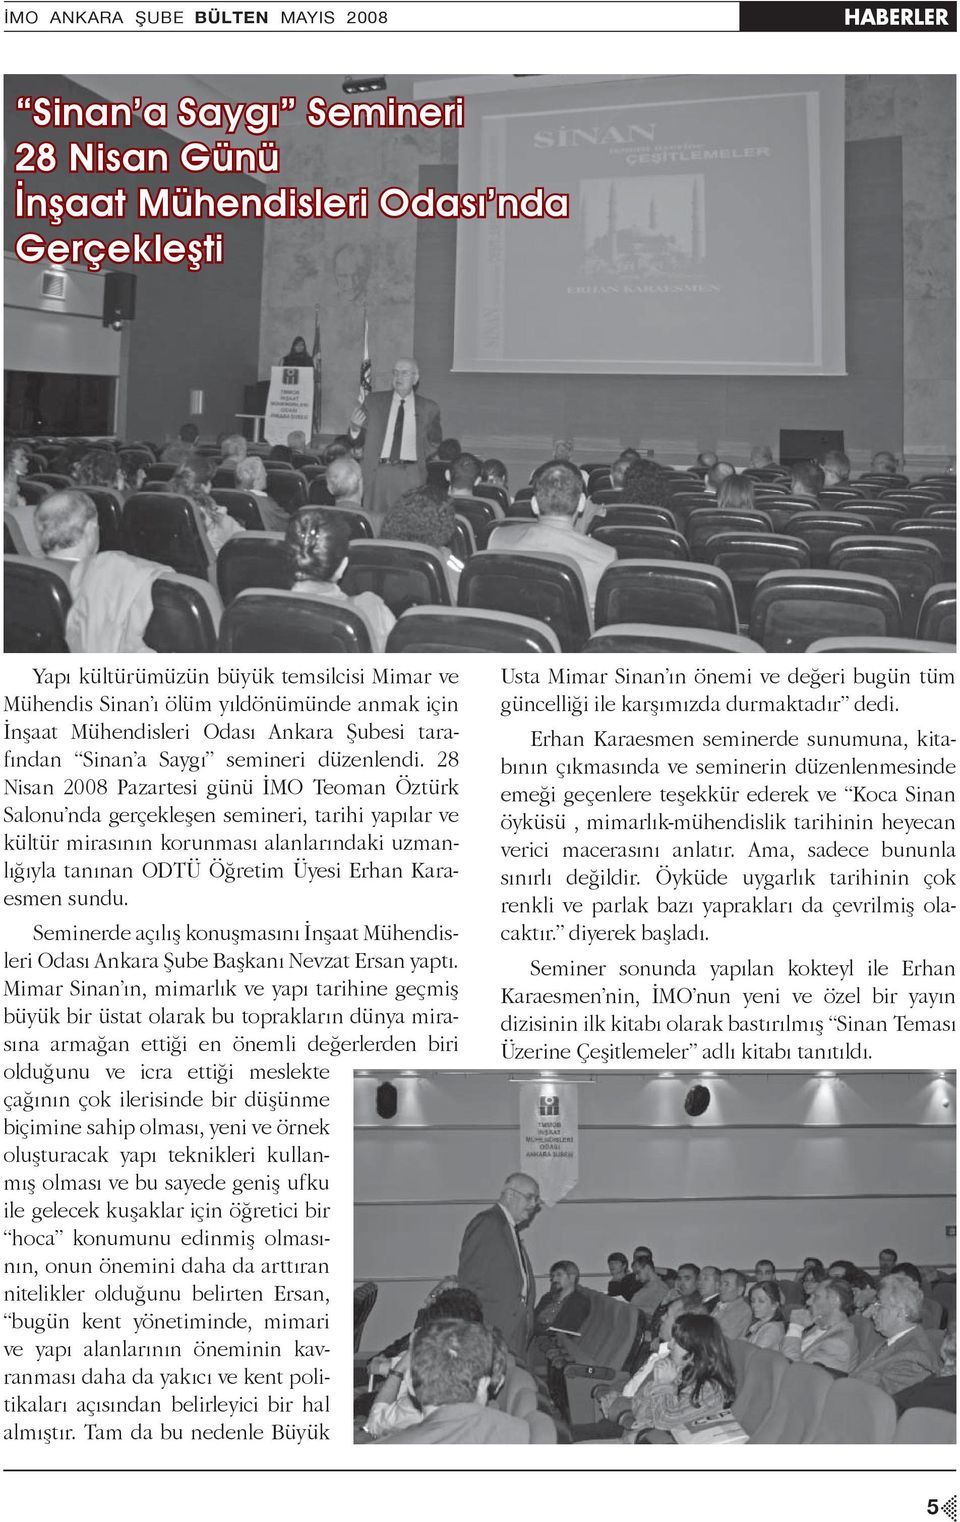 28 Nisan 2008 Pazartesi günü İMO Teoman Öztürk Salonu nda gerçekleşen semineri, tarihi yapılar ve kültür mirasının korunması alanlarındaki uzmanlığıyla tanınan ODTÜ Öğretim Üyesi Erhan Karaesmen